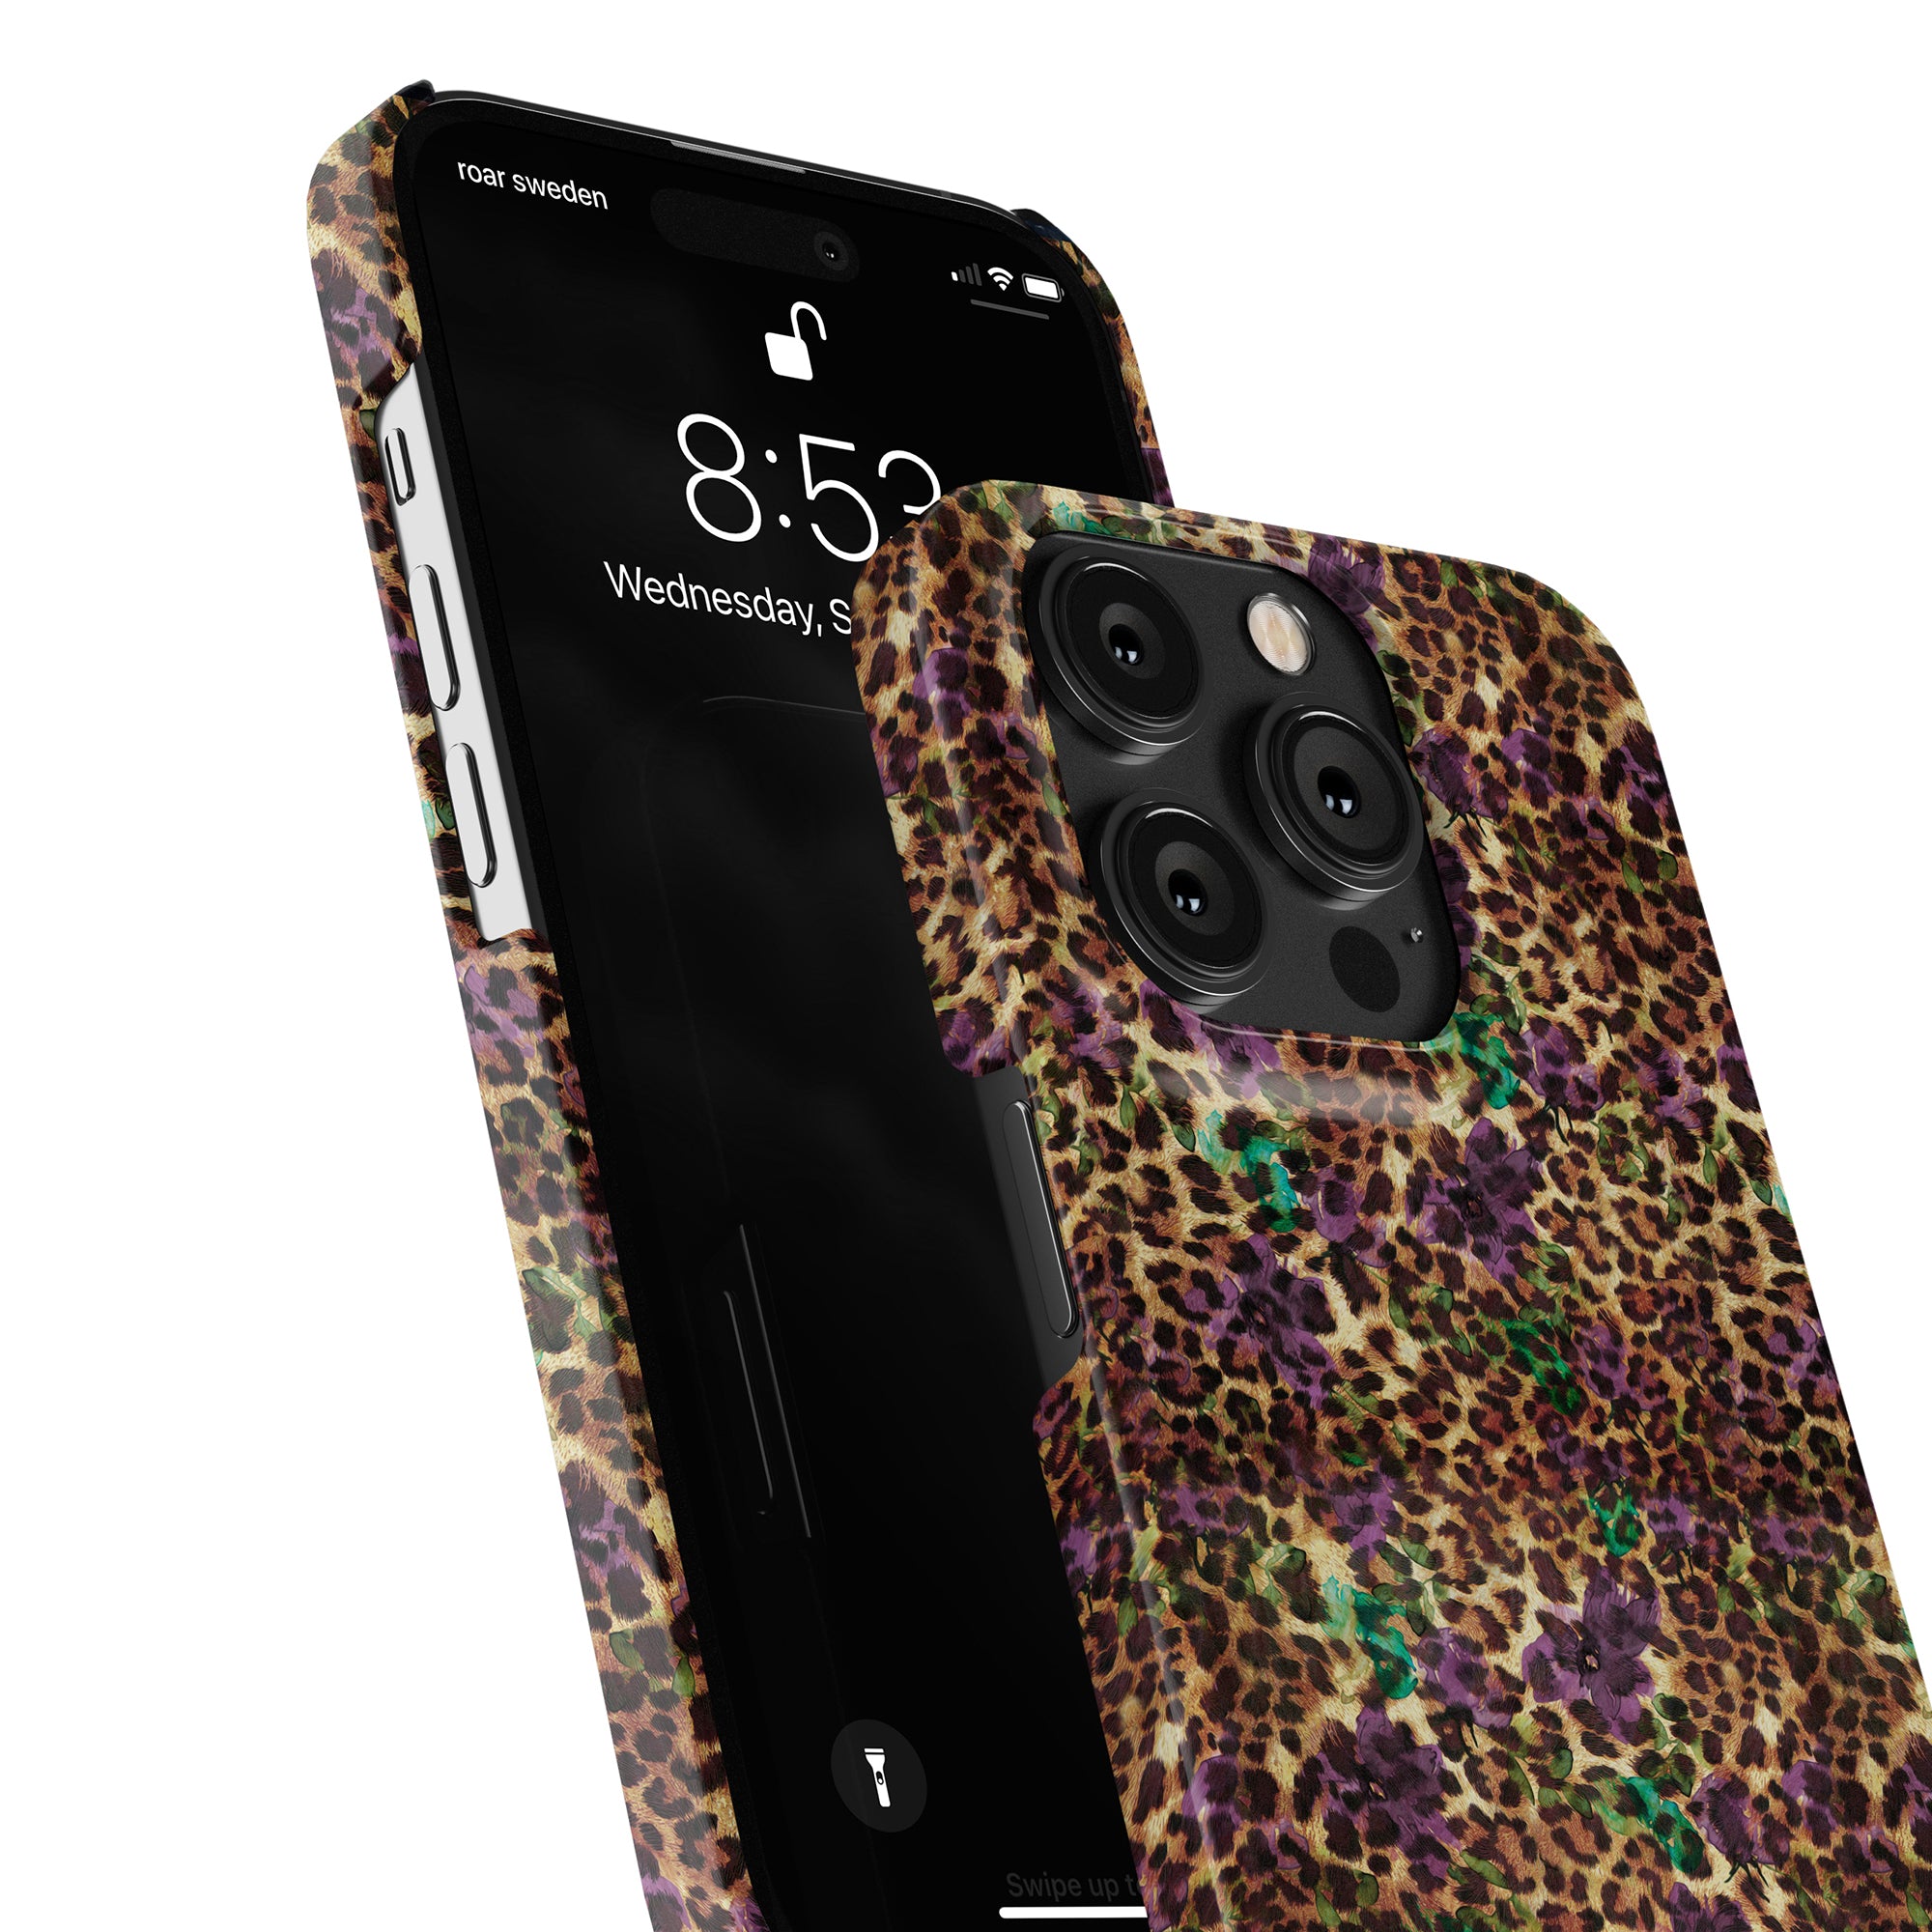 Förbättra din iPhone 11 Pro med detta iögonfallande Flower Leopard - Tunt fodral. Detta högkvalitativa skyddstillbehör skyddar inte bara din enhet från repor och stötar, utan ger också en touch av vild stil.